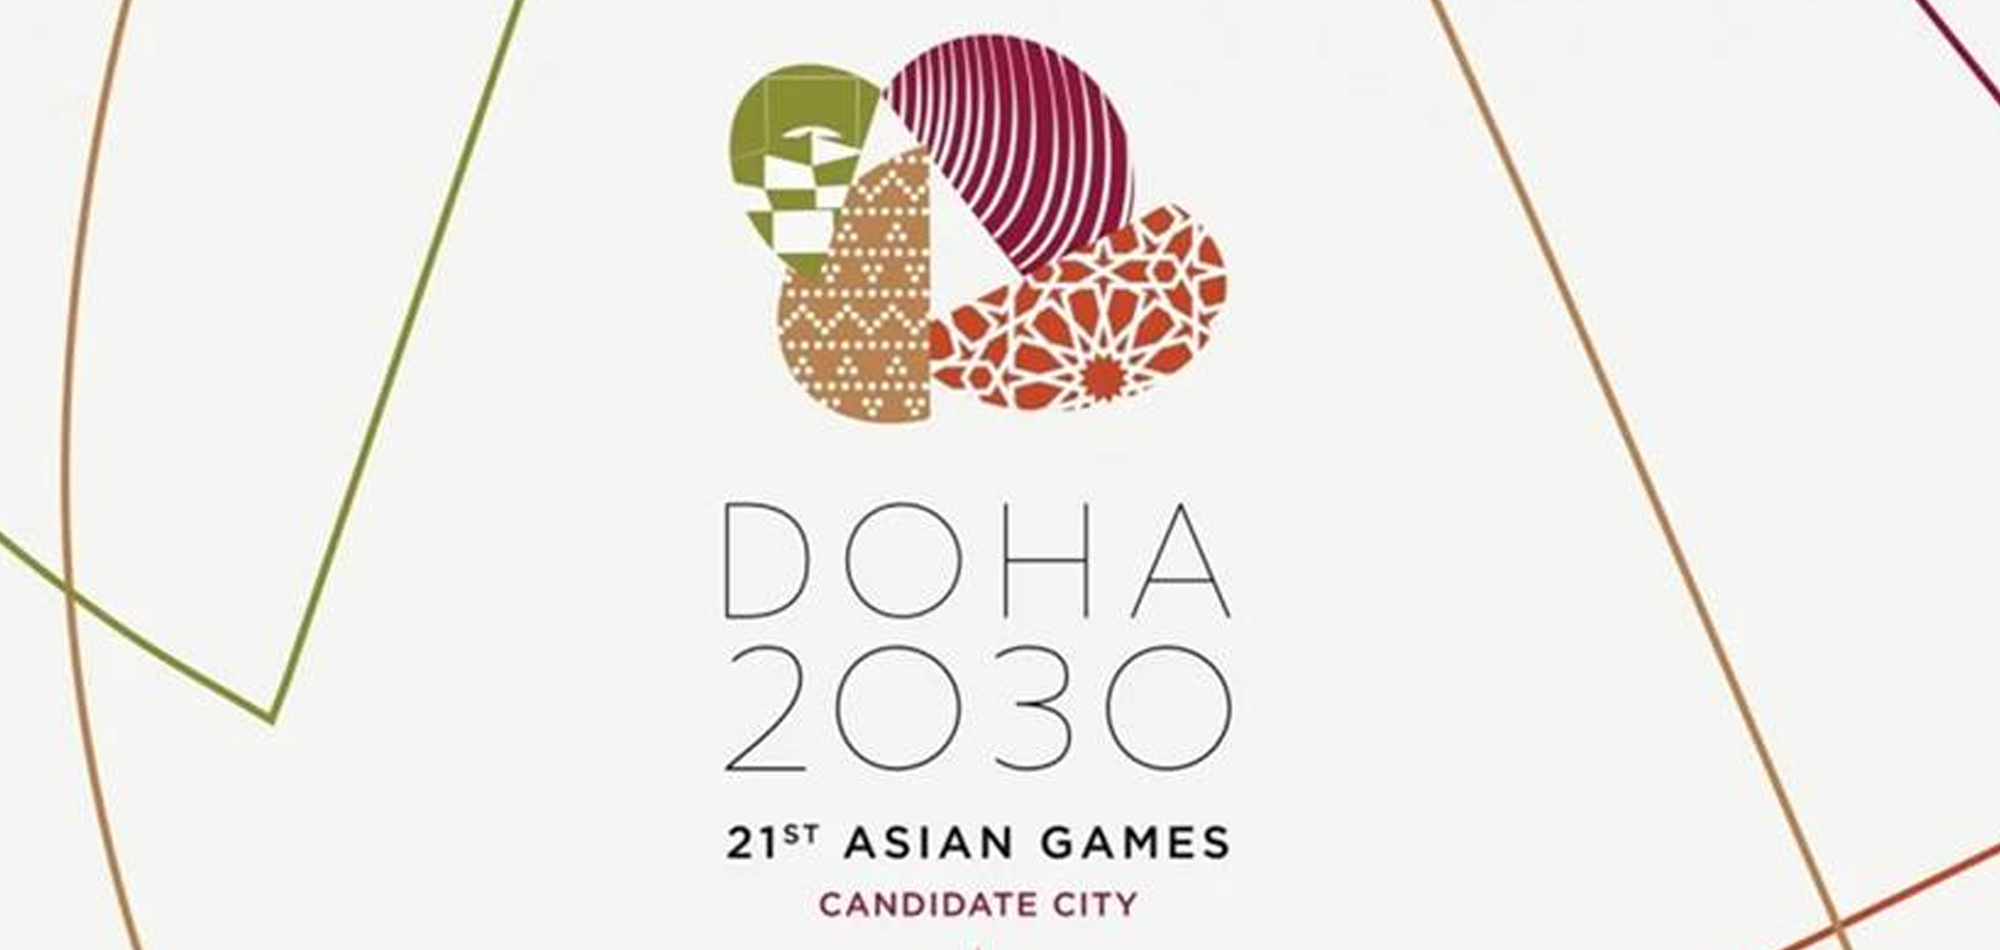 Asian Games Doha 2030